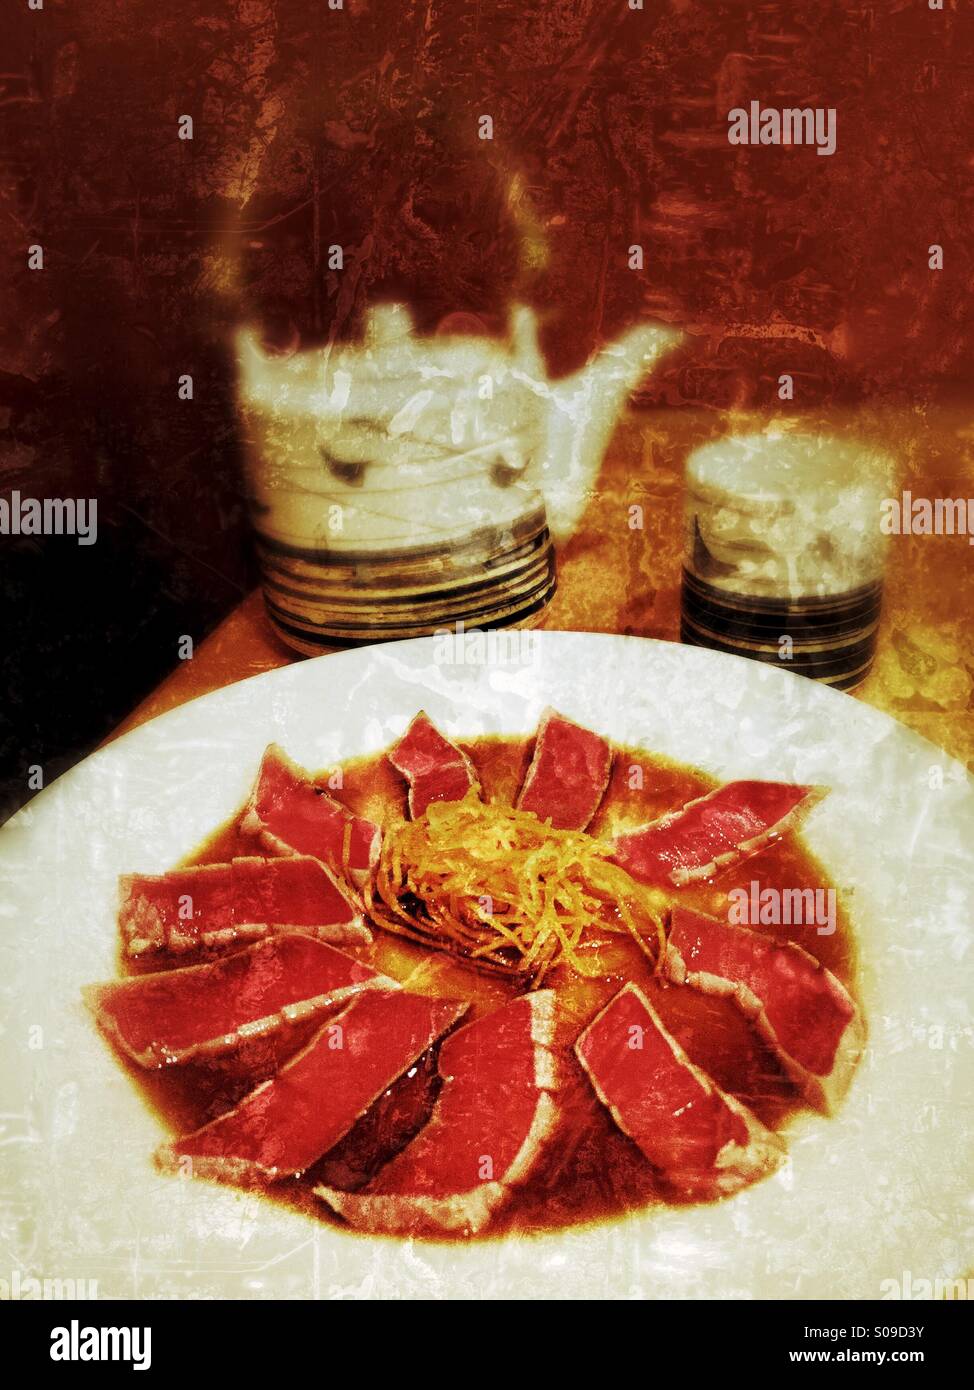 Grunge textured color photo d'un tataki de thon avec sauce Ponzu apéritif et Japonais théière et tasse sur une table dans un restaurant. Banque D'Images